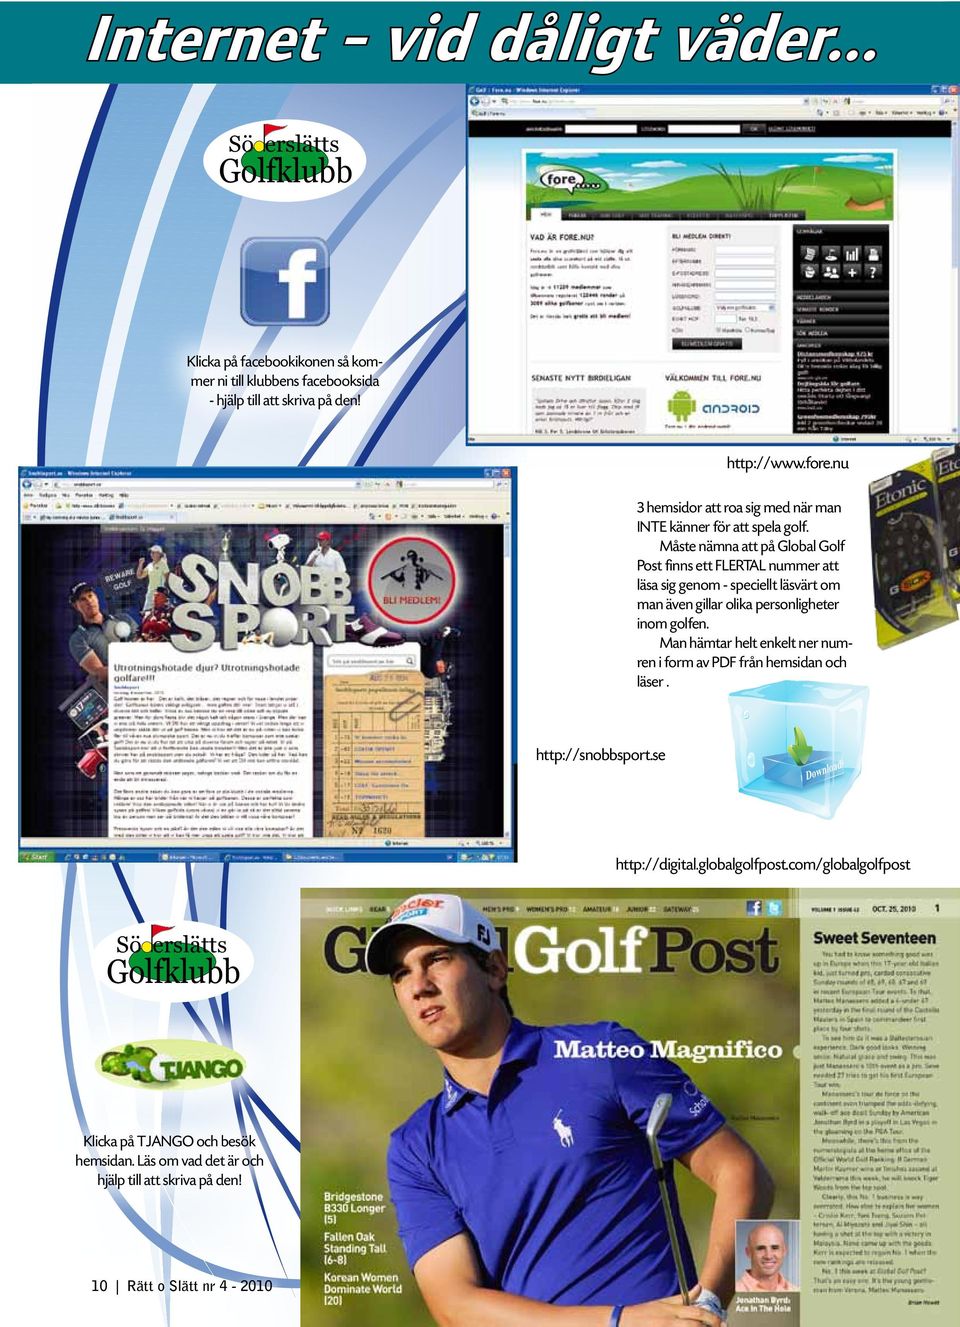 Måste nämna att på Global Golf Post finns ett FLERTAL nummer att läsa sig genom - speciellt läsvärt om man även gillar olika personligheter inom golfen.